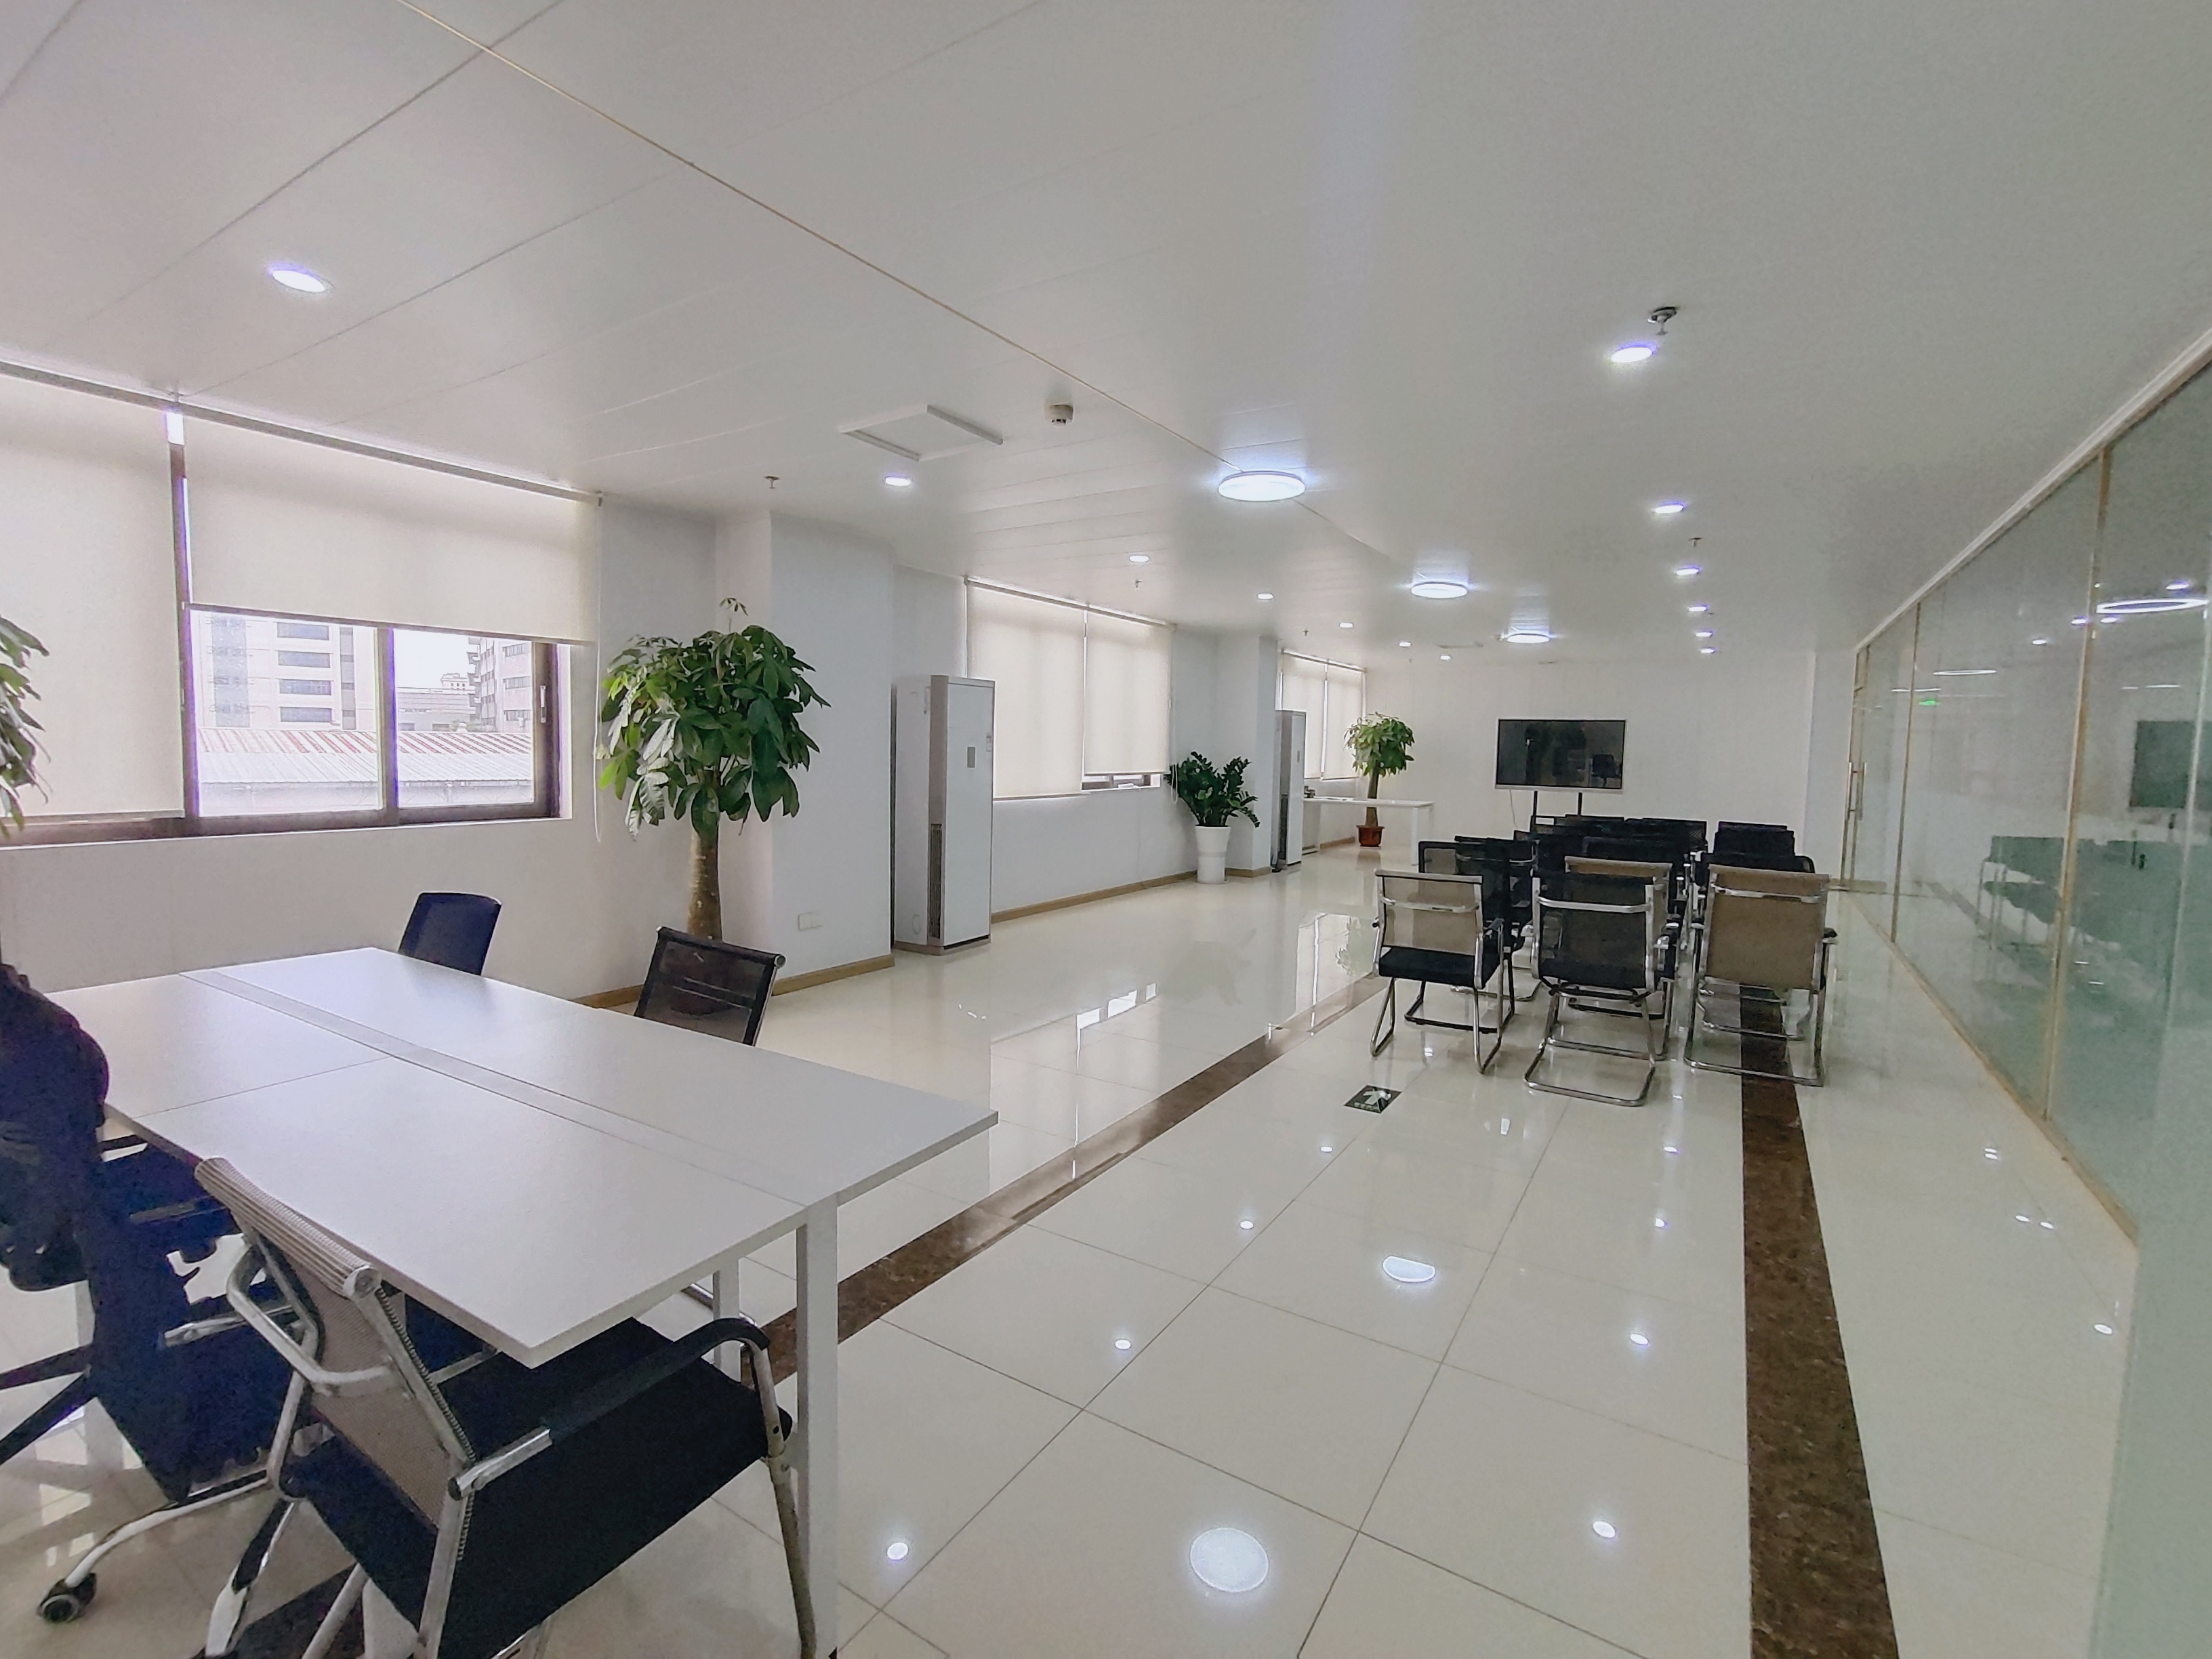 黄埔开发区西区新出创意园区办公室30平方起租。